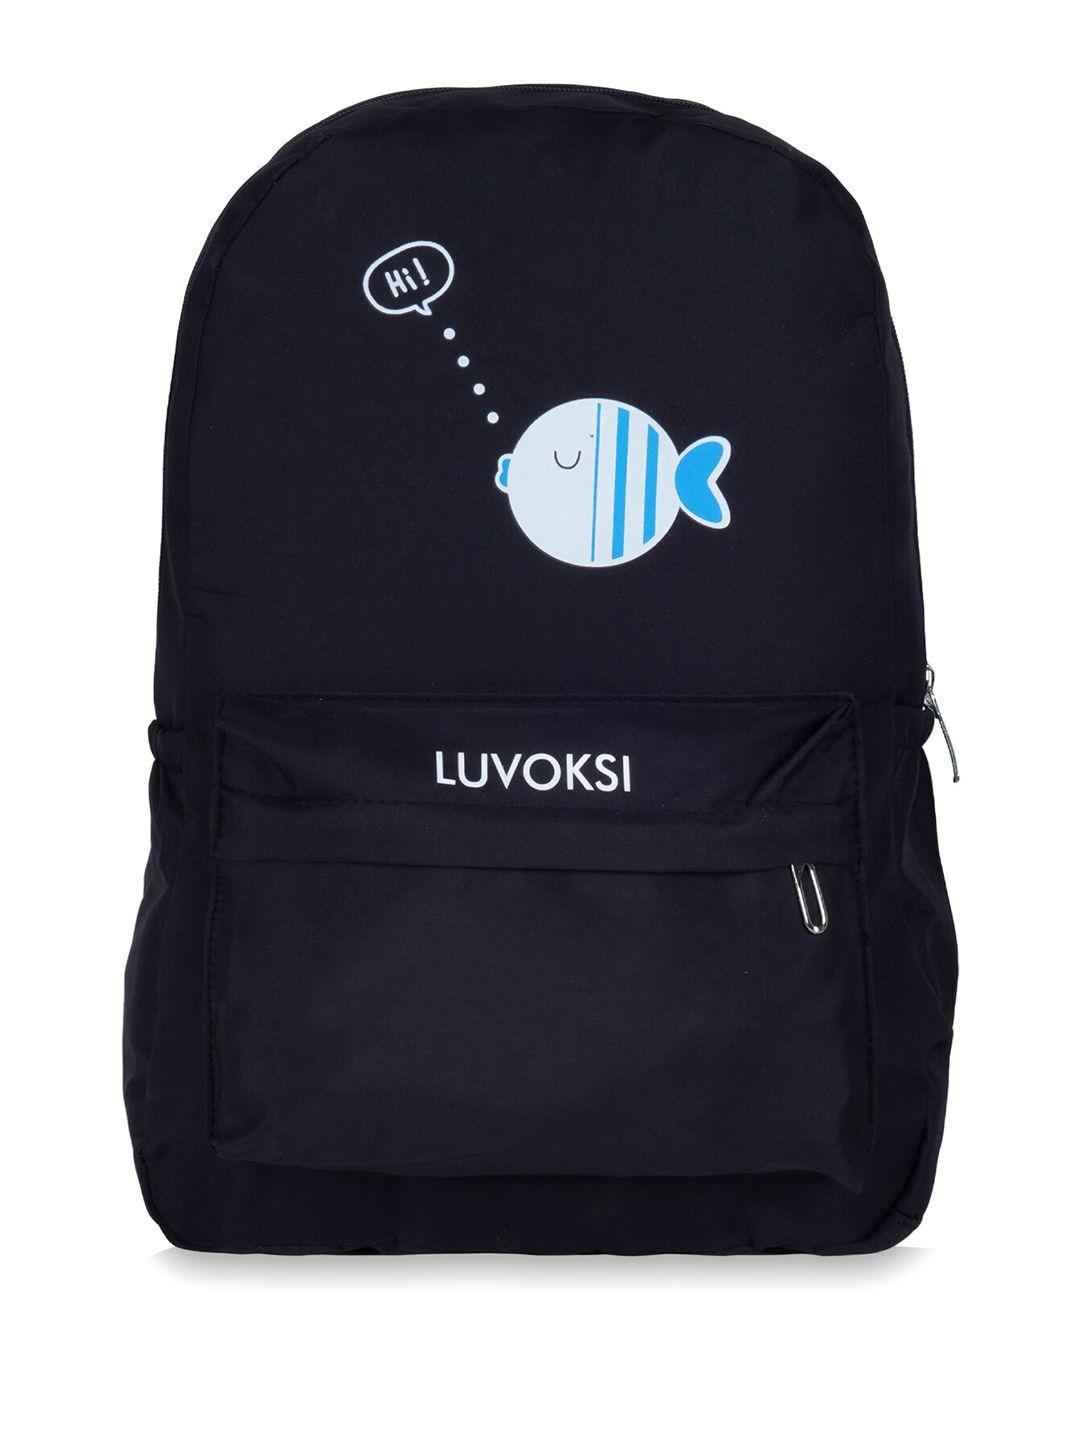 luvoksi women graphic water resistant backpack